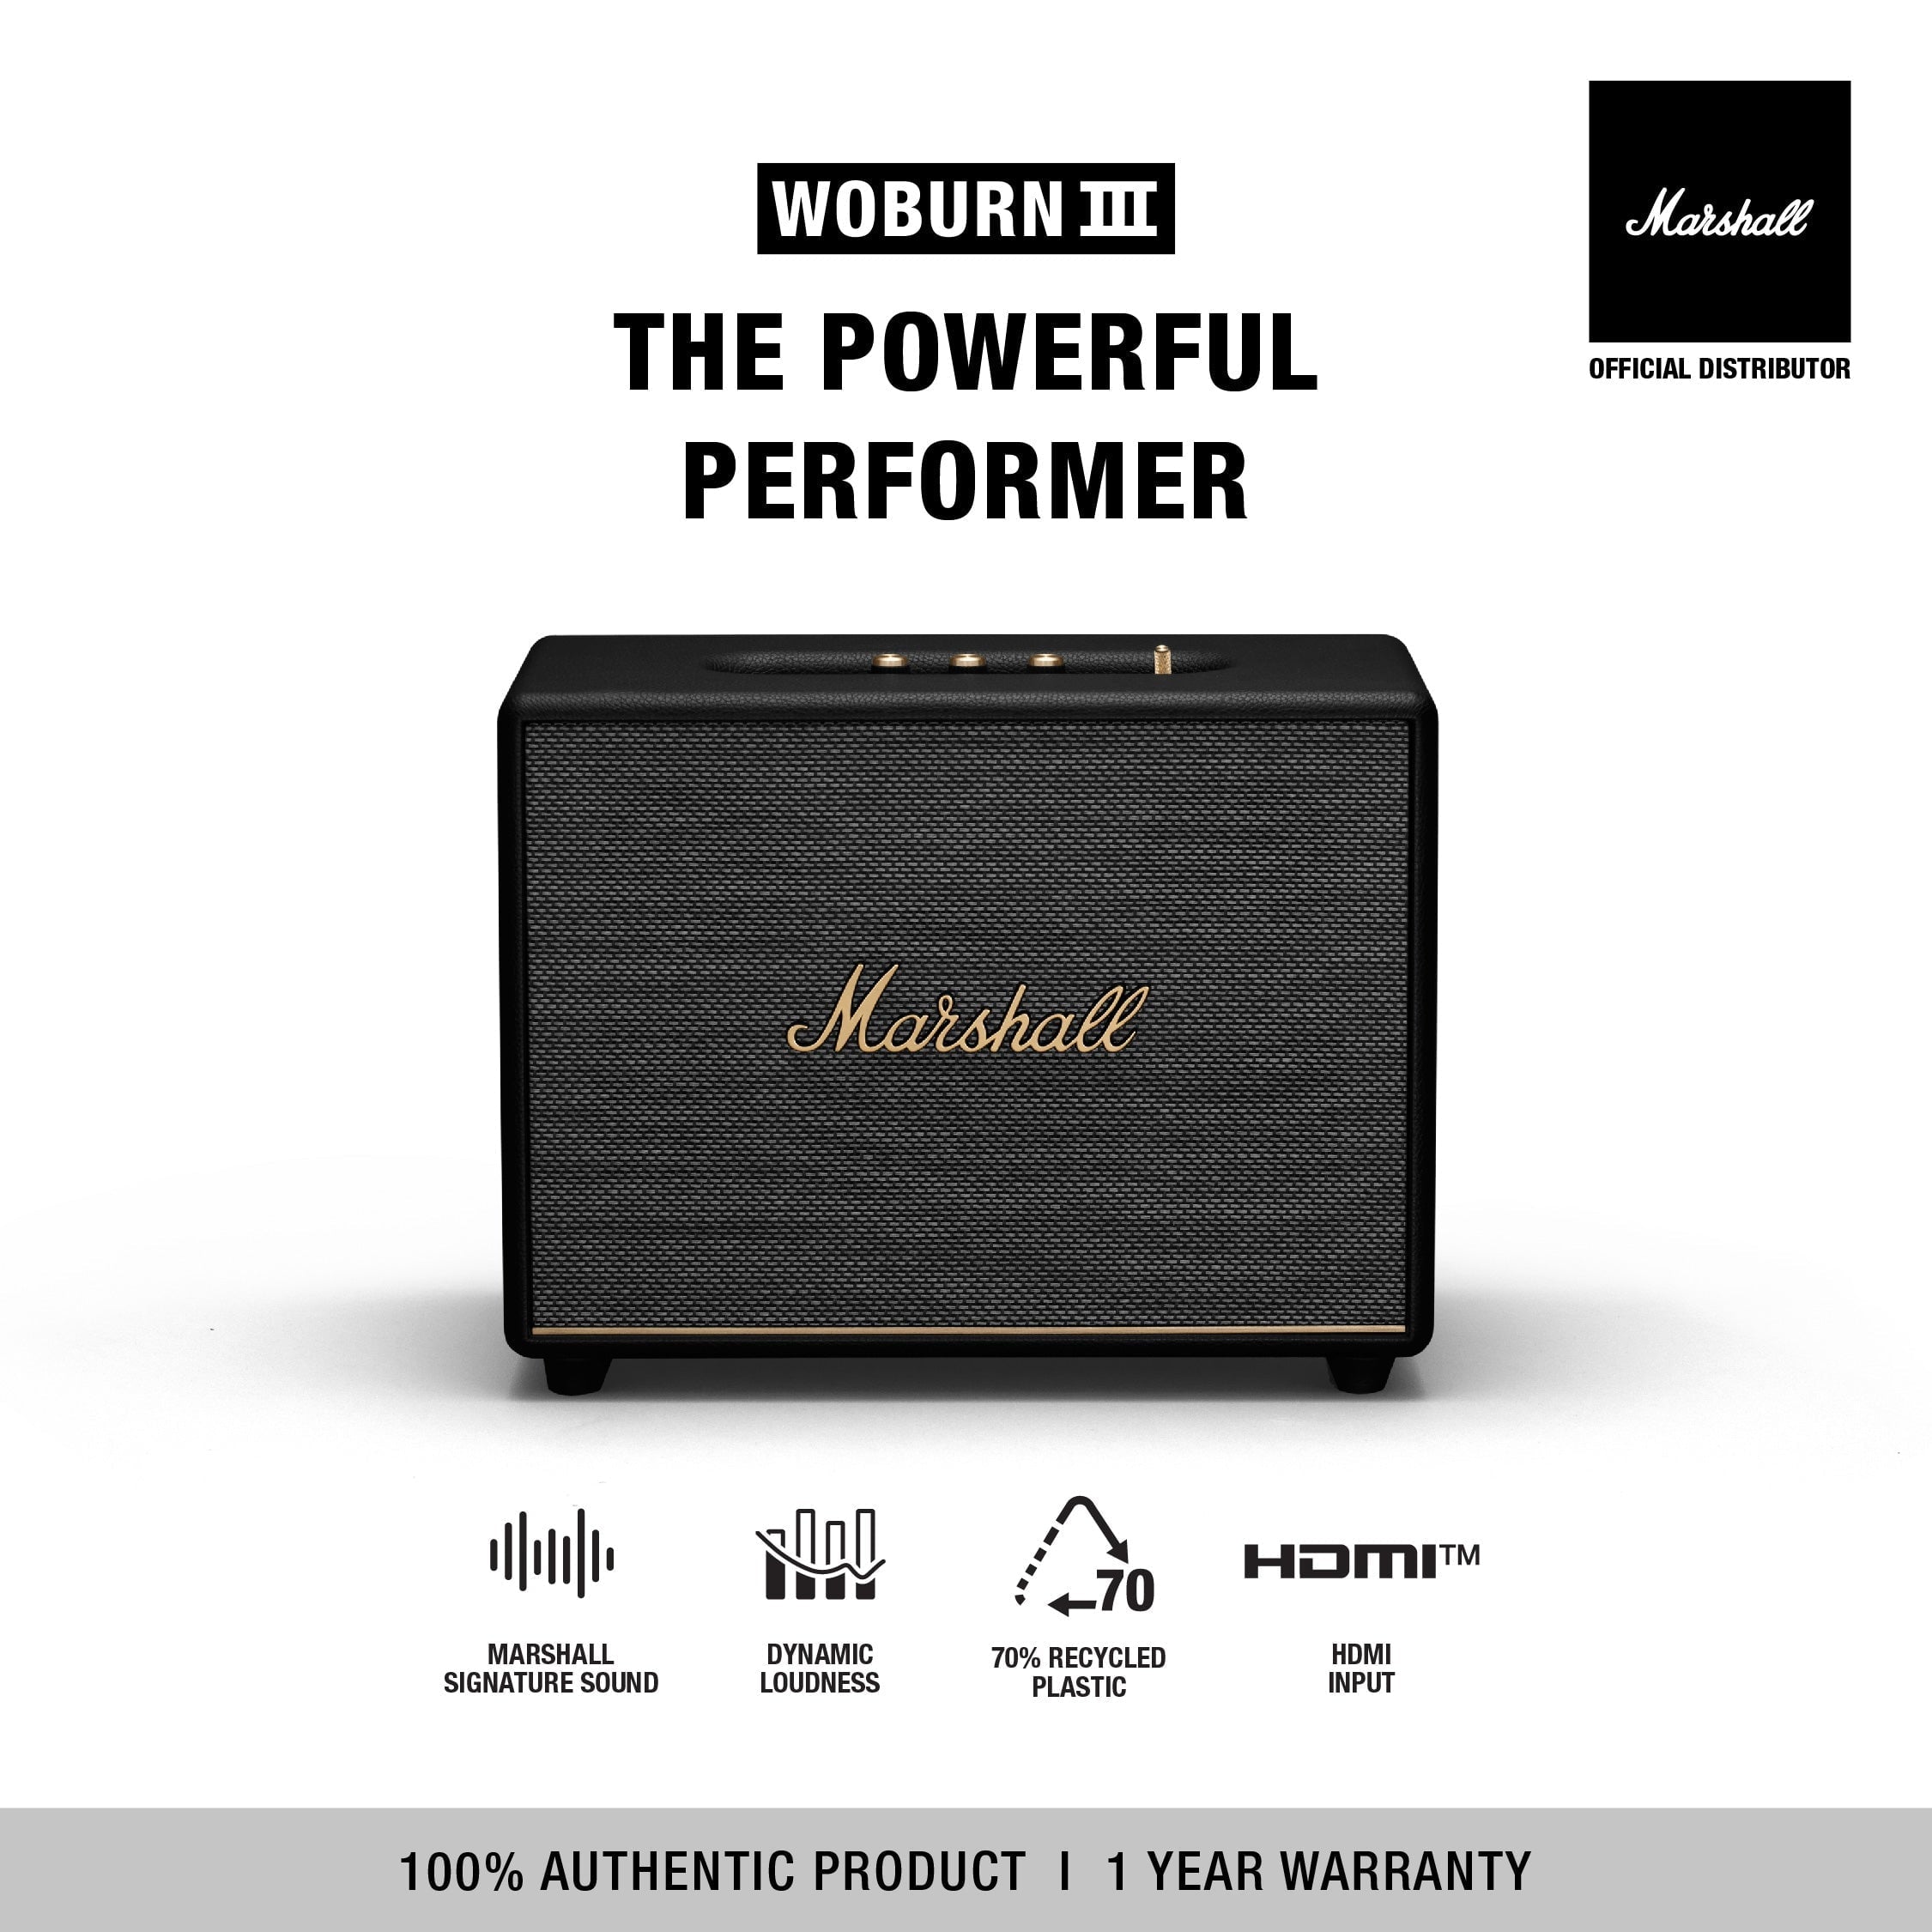 Marshall Woburn III Bluetooth Wireless Speaker,Black, 41% OFF